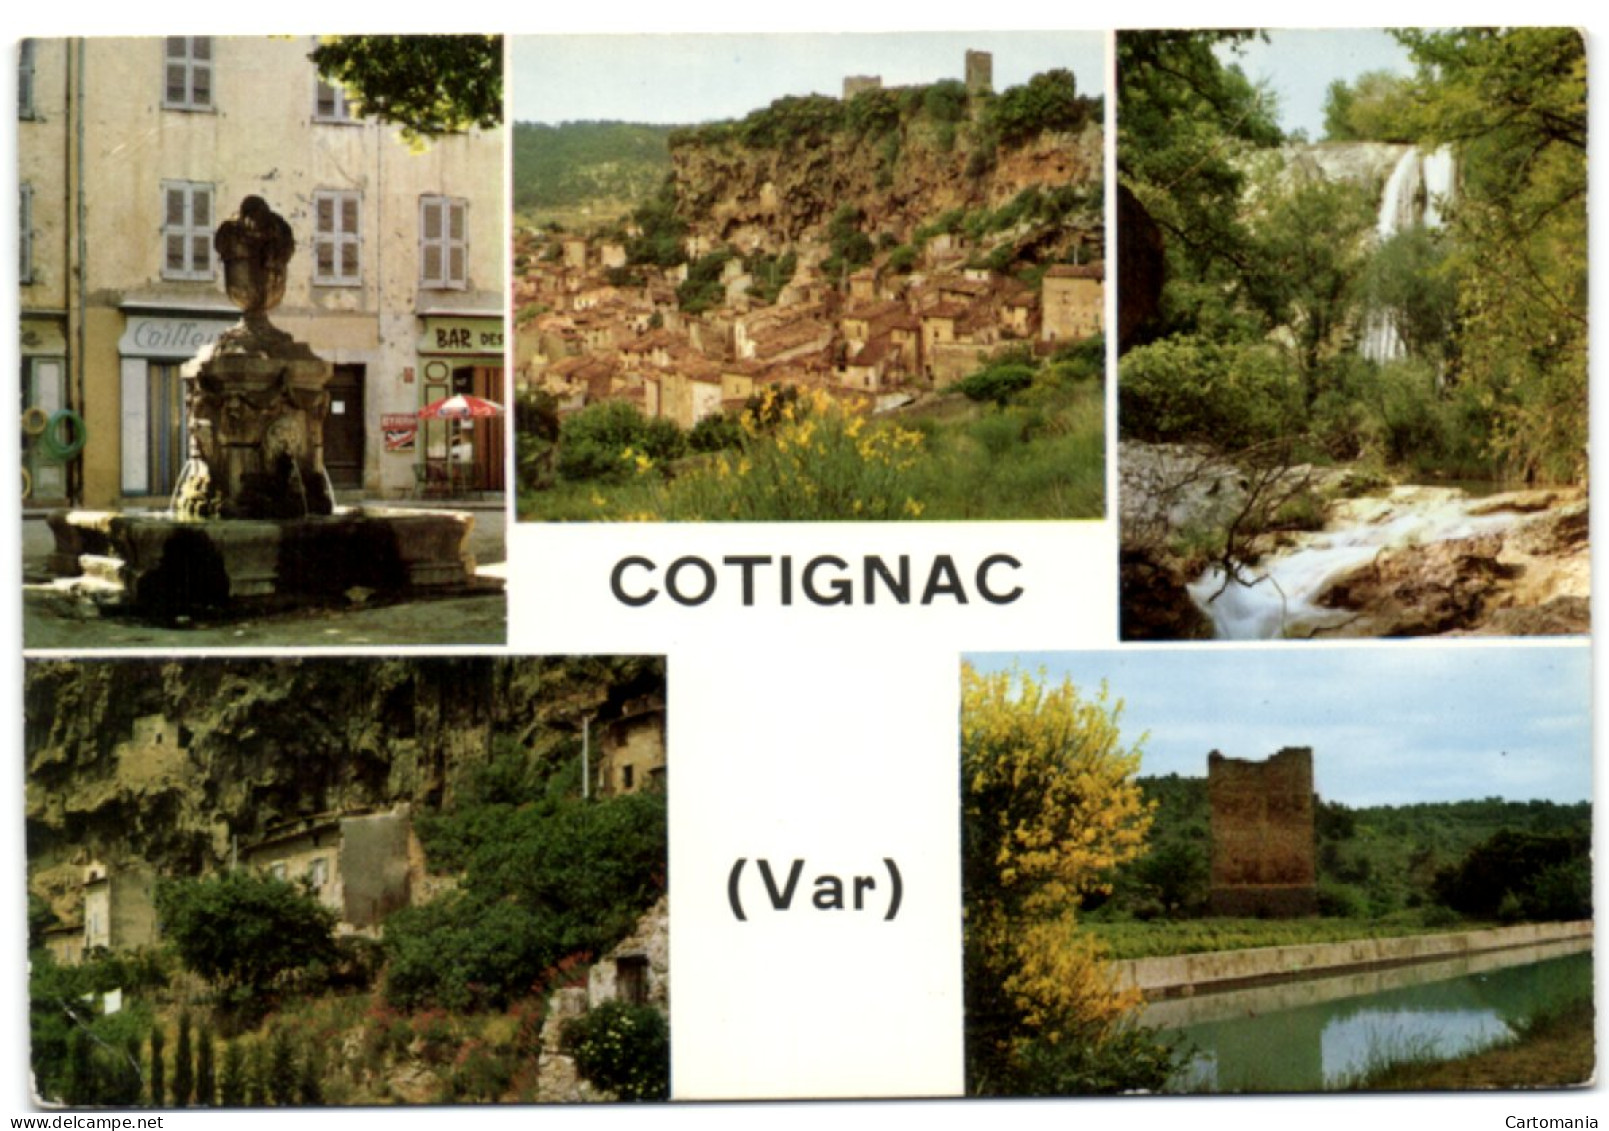 Cotignac (Var) - Cotignac